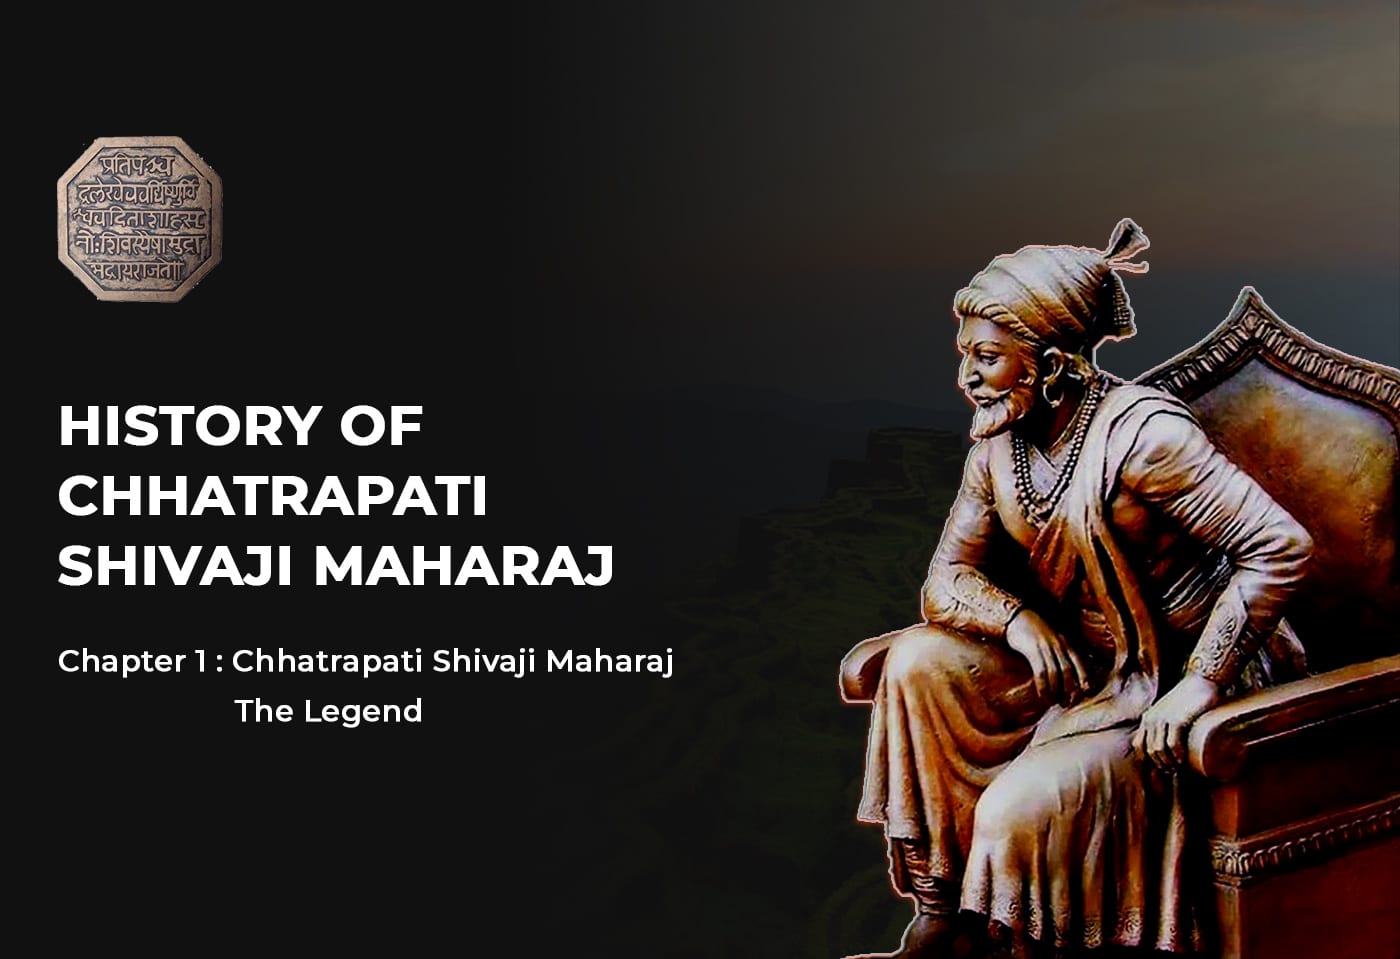 HISTORY OF CHHATRAPATI SHIVAJI MAHARAJ - Chapter 1 Chhatrapati Shivaji Maharaj The Legend - HinduFAQs